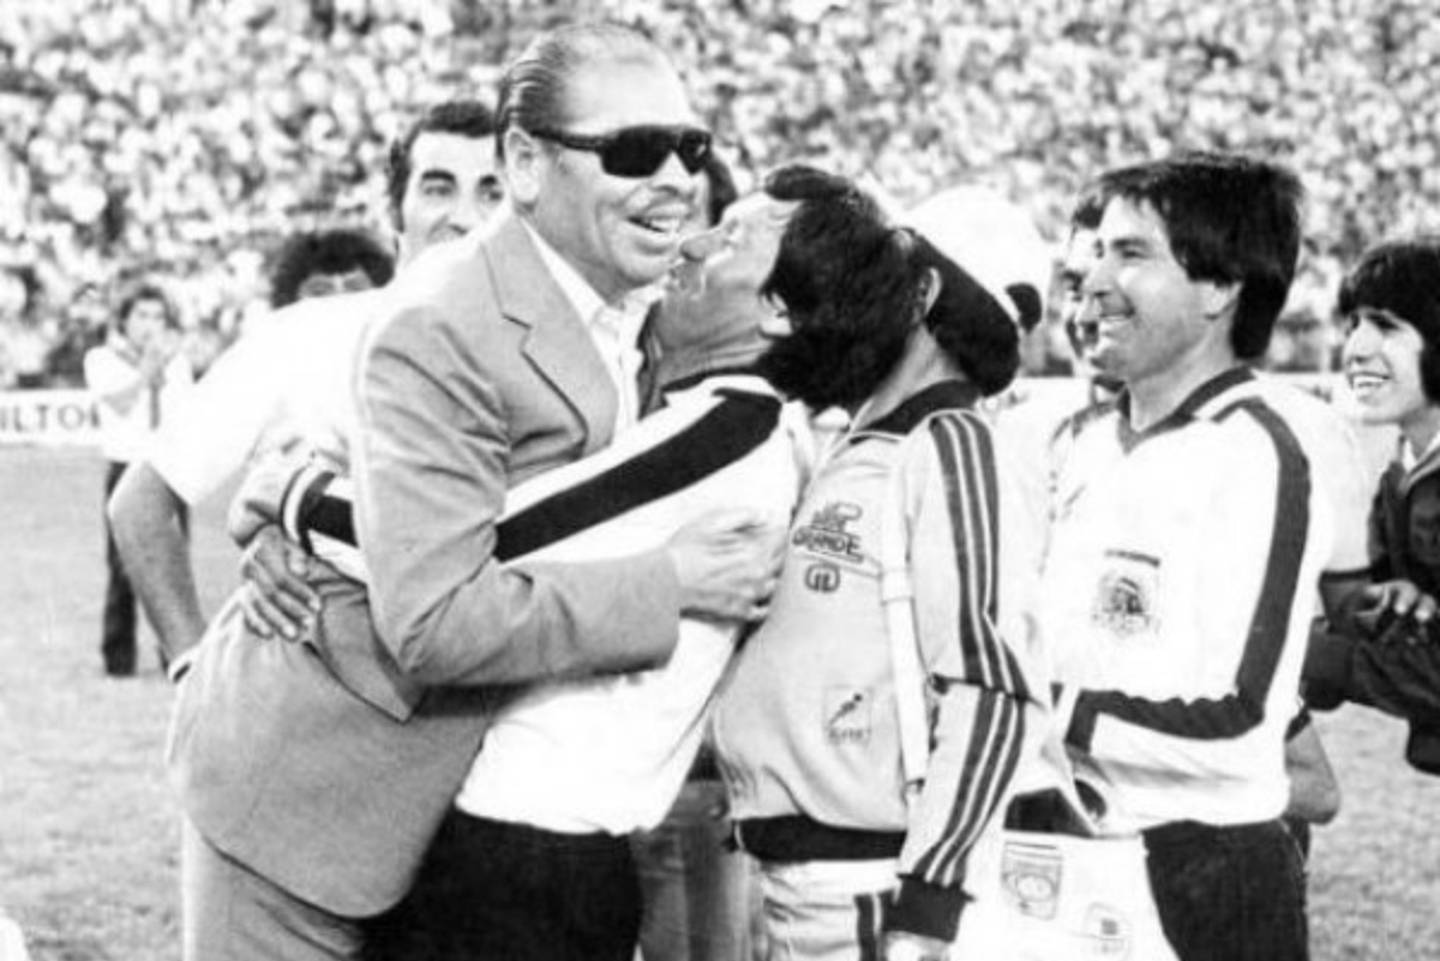 El entrenador Luis Álamos celebrando con los jugadores de Colo Colo en 1972.